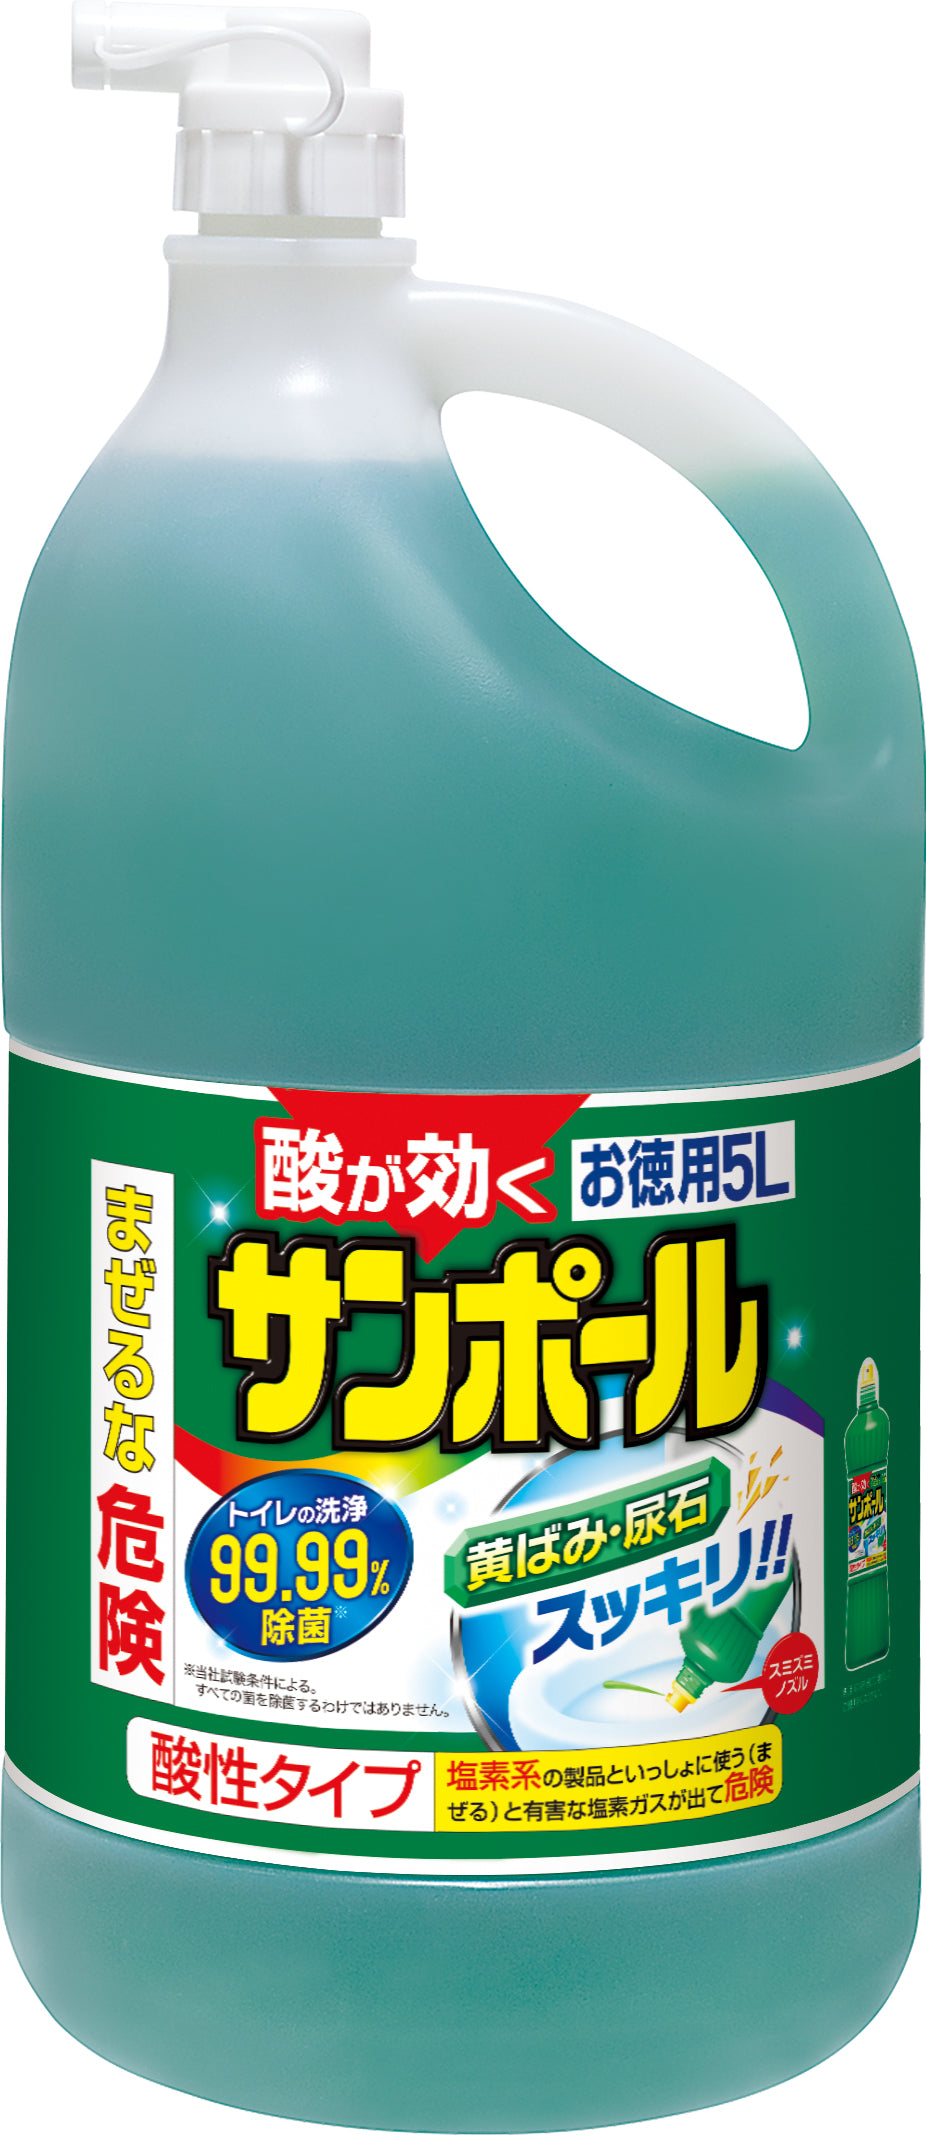 大日本除虫菊 KINCHO 浄化槽サンポール トイレ洗剤 500ml